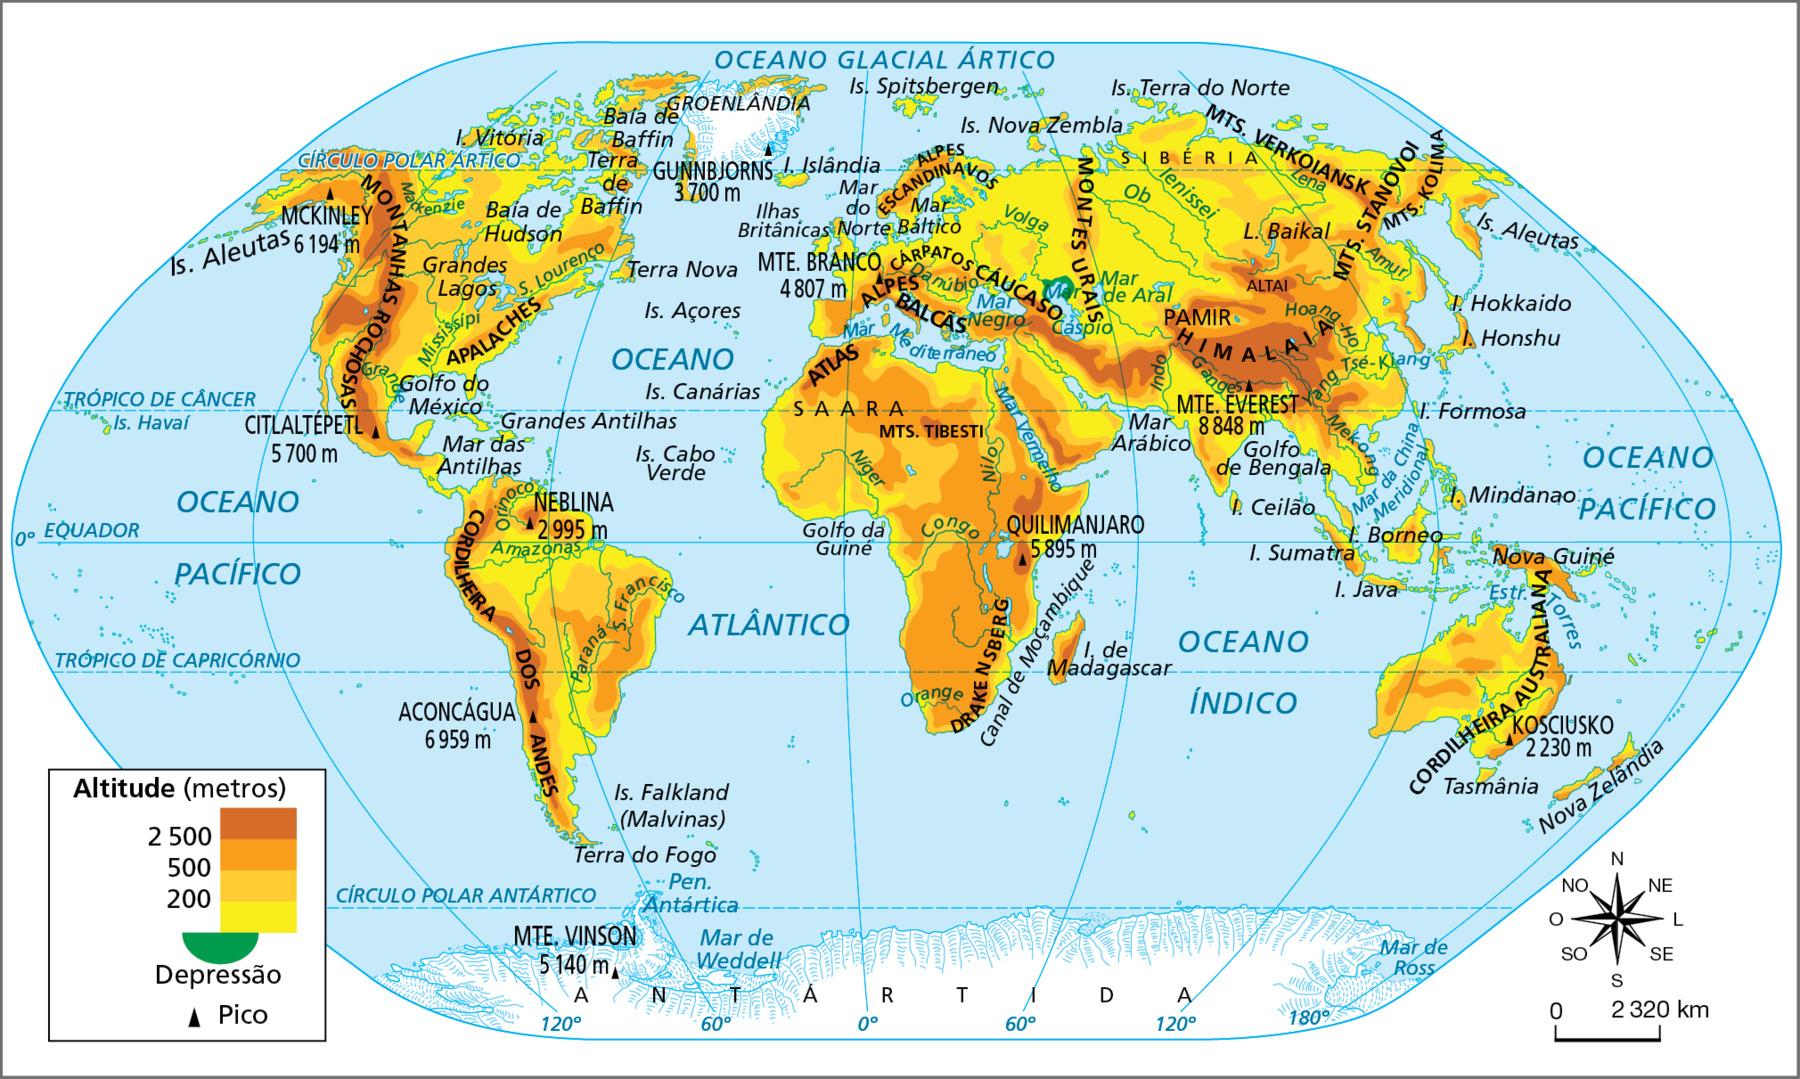 Mapa. Mundo: físico
Planisfério mostrando as diferentes altitudes e os picos do mundo. As altitudes mais elevadas estão representas em marrom-escuro, enquanto as menos elevadas estão em amarelo. As depressões estão representadas em verde e os picos por um triângulo preto.
As altitudes mais elevadas, de 2.500 metros ou mais, estão: na costa oeste da América, ou seja, na Cordilheira dos Andes e Montanhas Rochosas; Na África, próximo ao Quilimanjaro, na cadeia montanhosa do Atlas, no monte Tibesti e em Draquensbergui; Na Europa Ocidental, na região dos Alpes e dos Balcãs; No Cáucaso, entre a Europa e a Ásia, e ao sul dessa formação; na Ásia central, na extensa região ocupada pelo Himalaia, e no sudoeste do Oriente Médio.
As altitudes que variam entre 200 e mais de 500 metros, estão: na América do Norte e na América do Sul, em extensas áreas do norte, do leste e do centro; na África, em praticamente todo o continente, com exceção do litoral e das cadeias montanhosas e montes mais elevados; na Europa, nas porções central, leste e sul do continente, além dos Alpes Escandinavos, ao norte; na Ásia, em extensas porções do centro e do leste do continente, bem como no Oriente Médio e nos Montes Urais, na Rússia; a maior parte da Oceania, com altitudes mais elevadas no litoral leste australiano e em Nova Guiné.
As altitudes abaixo de 200 metros, estão: Na porção sul e ao norte da América do Sul, na América Central e no litoral da América do Norte; em praticamente todo o litoral da África; na porção norte e litorânea da Europa; uma enorme faixa do nordeste da Europa ao centro-norte da Ásia, ocupando praticamente todo o território russo; em áreas próximas ao litoral asiático e ao sul do Himalaia.
Depressão: litoral norte do Mar Cáspio, localizado próximo ao Cáucaso e aos Montes Urais.
Picos: Monte Everest 8.848 metros. Aconcágua 6.959 metros. Maquinlei 6.194 metros. Quilimanjaro 5.895 metros. Citlaltépetl 5.700 metros. Monte Vinson 5.140 metros . Monte Branco 4.807 metros. Gunnbjorns 3.700 metros. Neblina 2.995 metros. Kosciusko 2.230 metros.
Na parte inferior, rosa dos ventos e escala de 0 a 2.320 quilômetros.